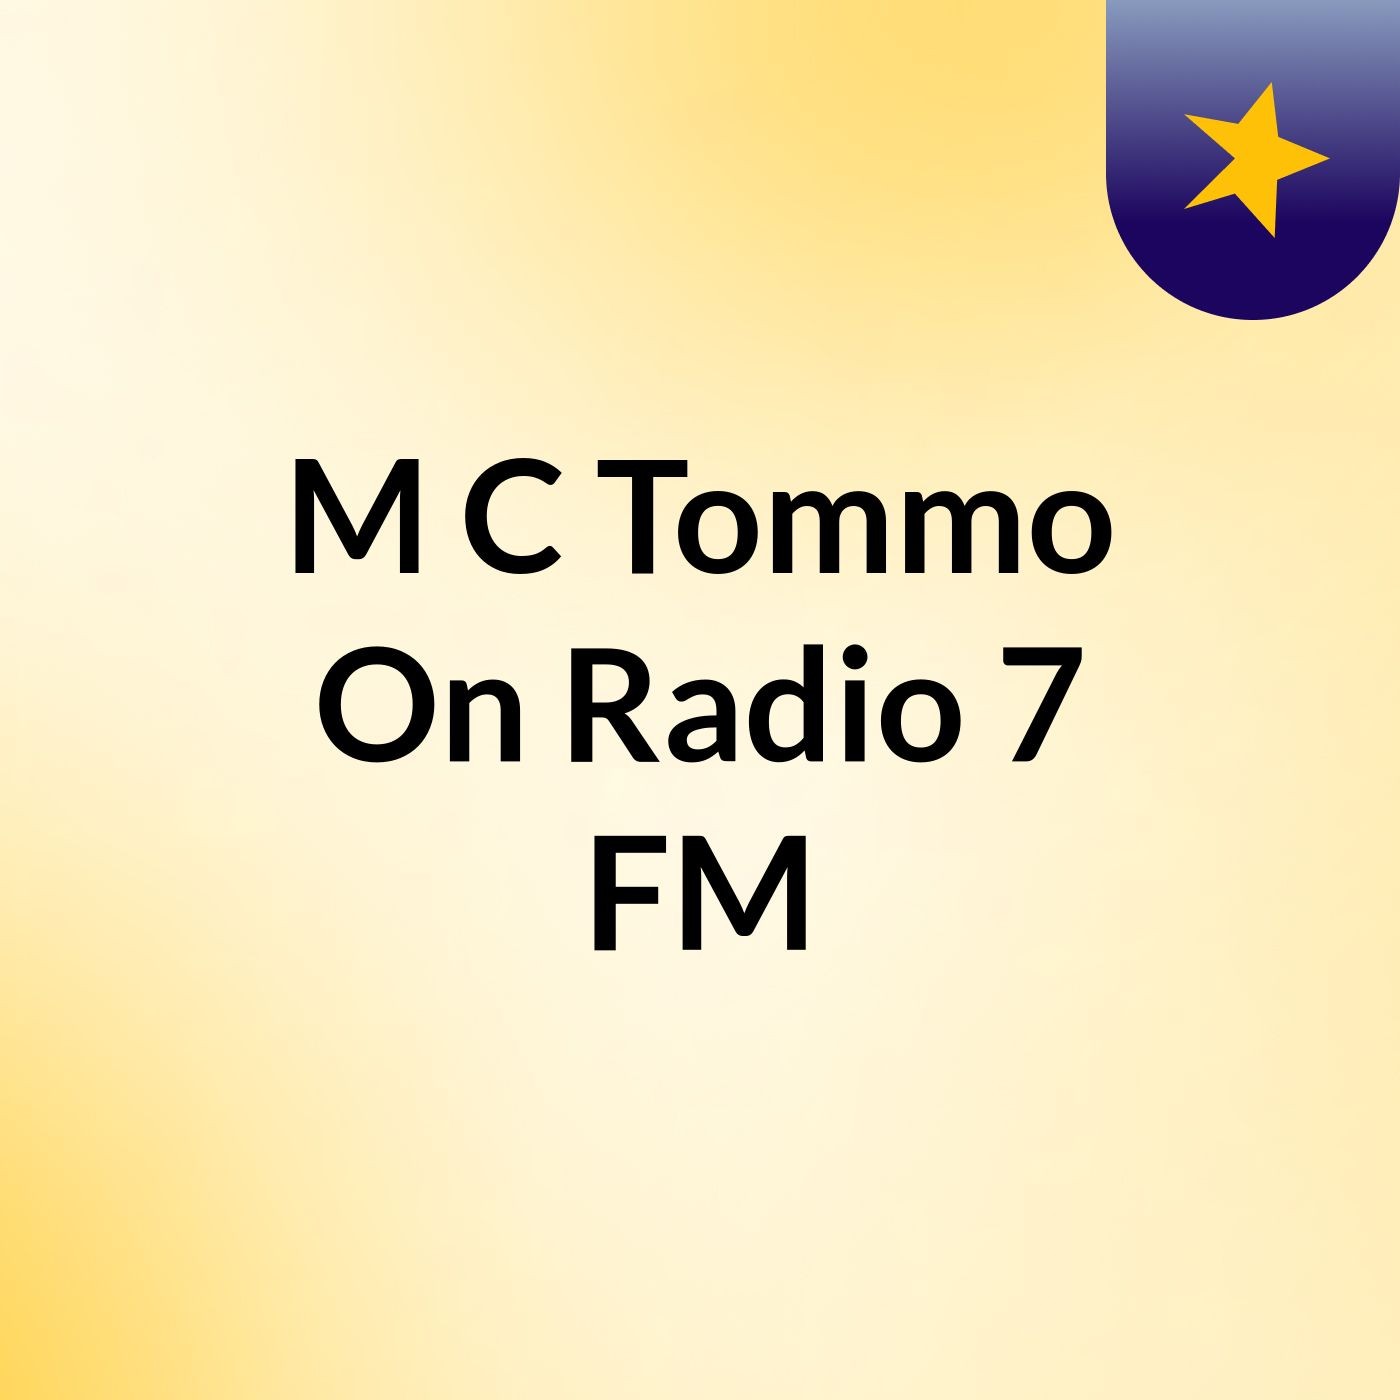 M C Tommo On Radio 7 FM